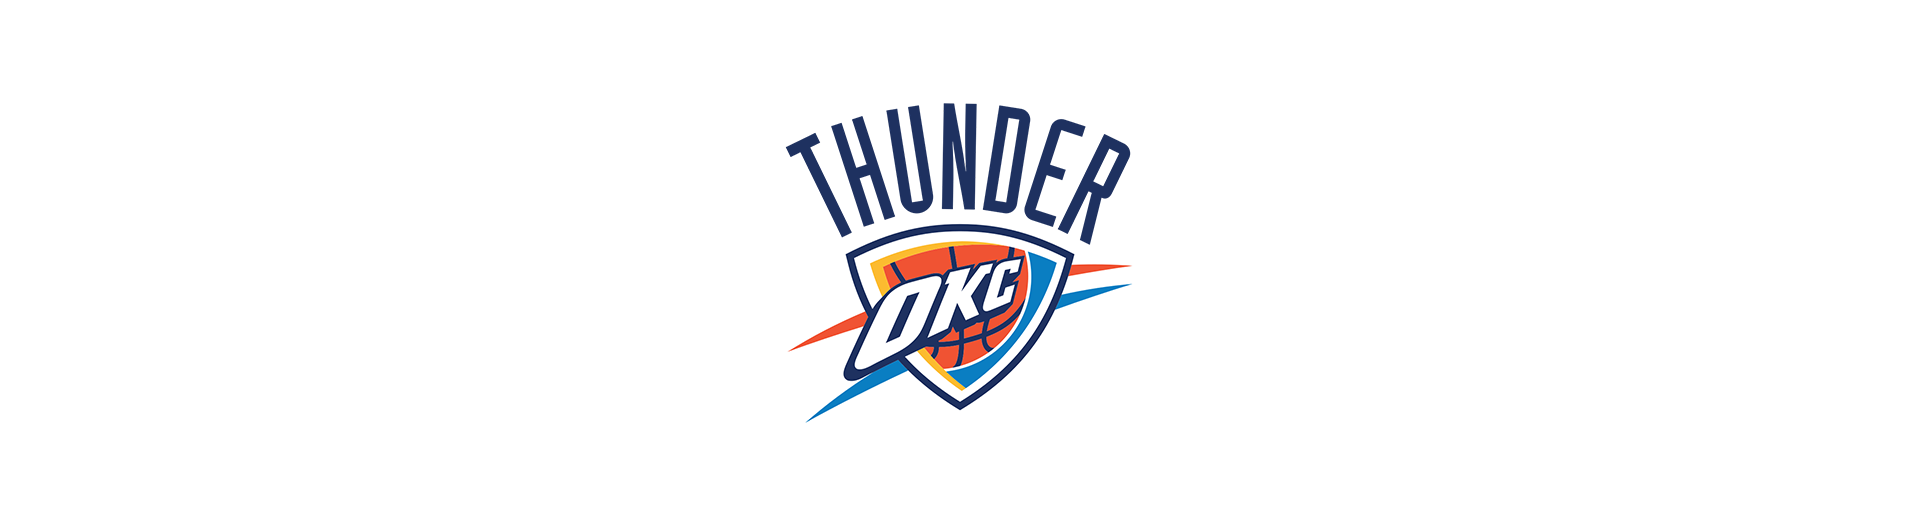 Oklahoma City Thunder (OKL)